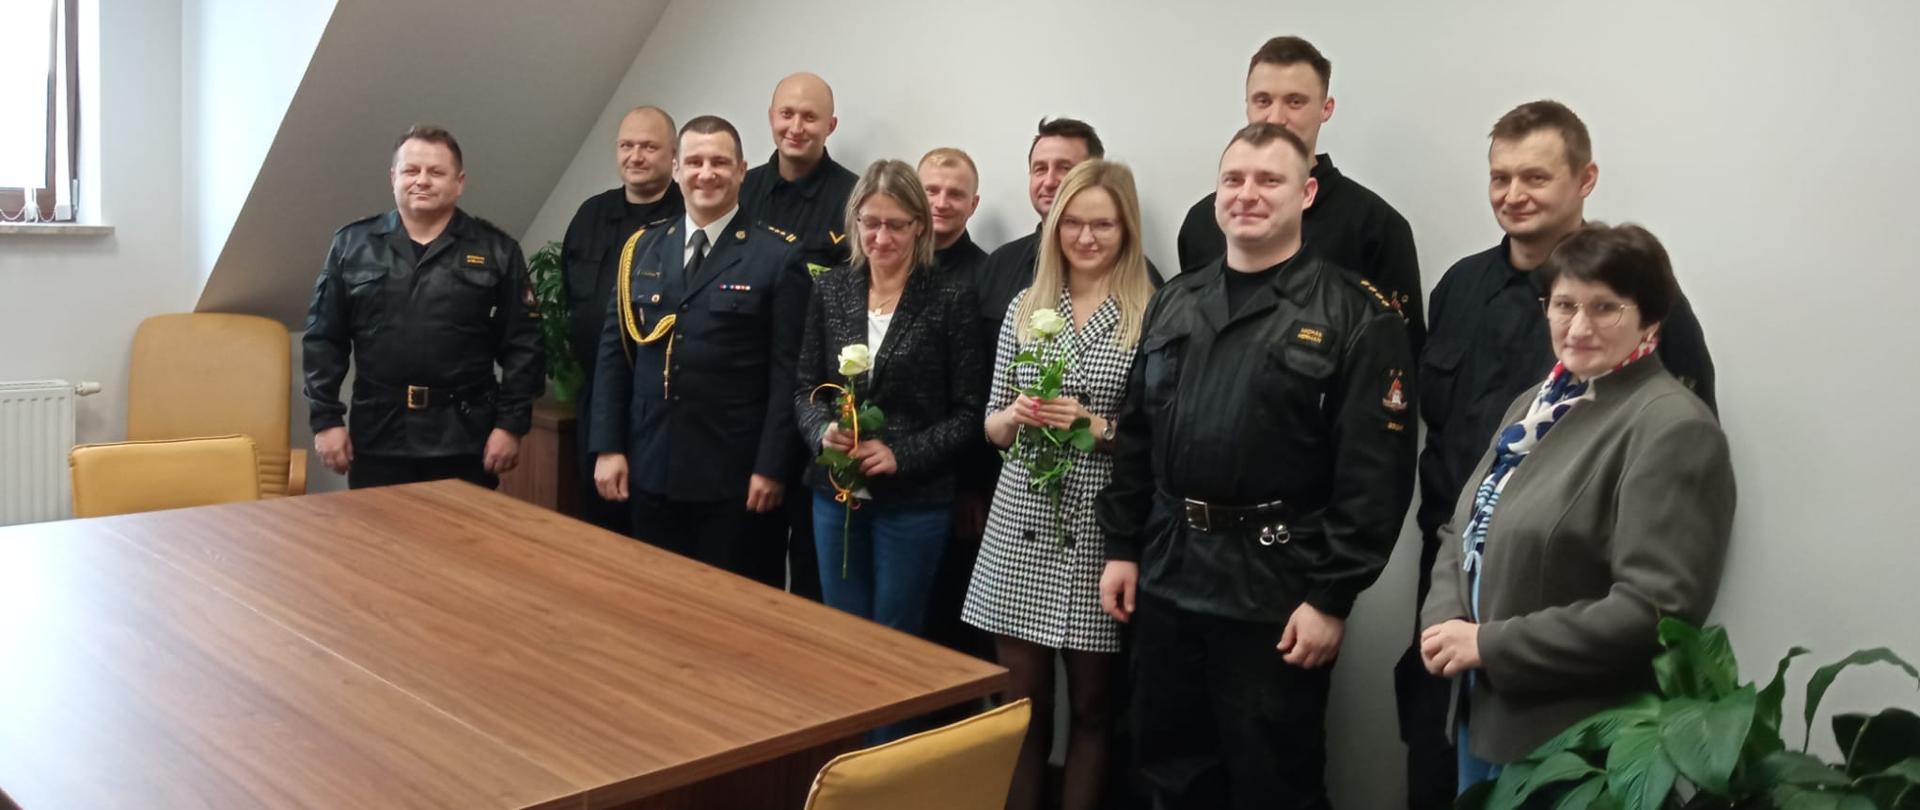 Zdjęcie przedstawia funkcjonariuszy oraz pracowników korpusu służby cywilnej Komendy Powiatowej Państwowej Straży Pożarnej w Gołdapi, które trzymają białą różę, po złożeniu życzeń i podziękowań z okazji zwyczajowo przypadającego 11 listopada Dnia Służby Cywilnej